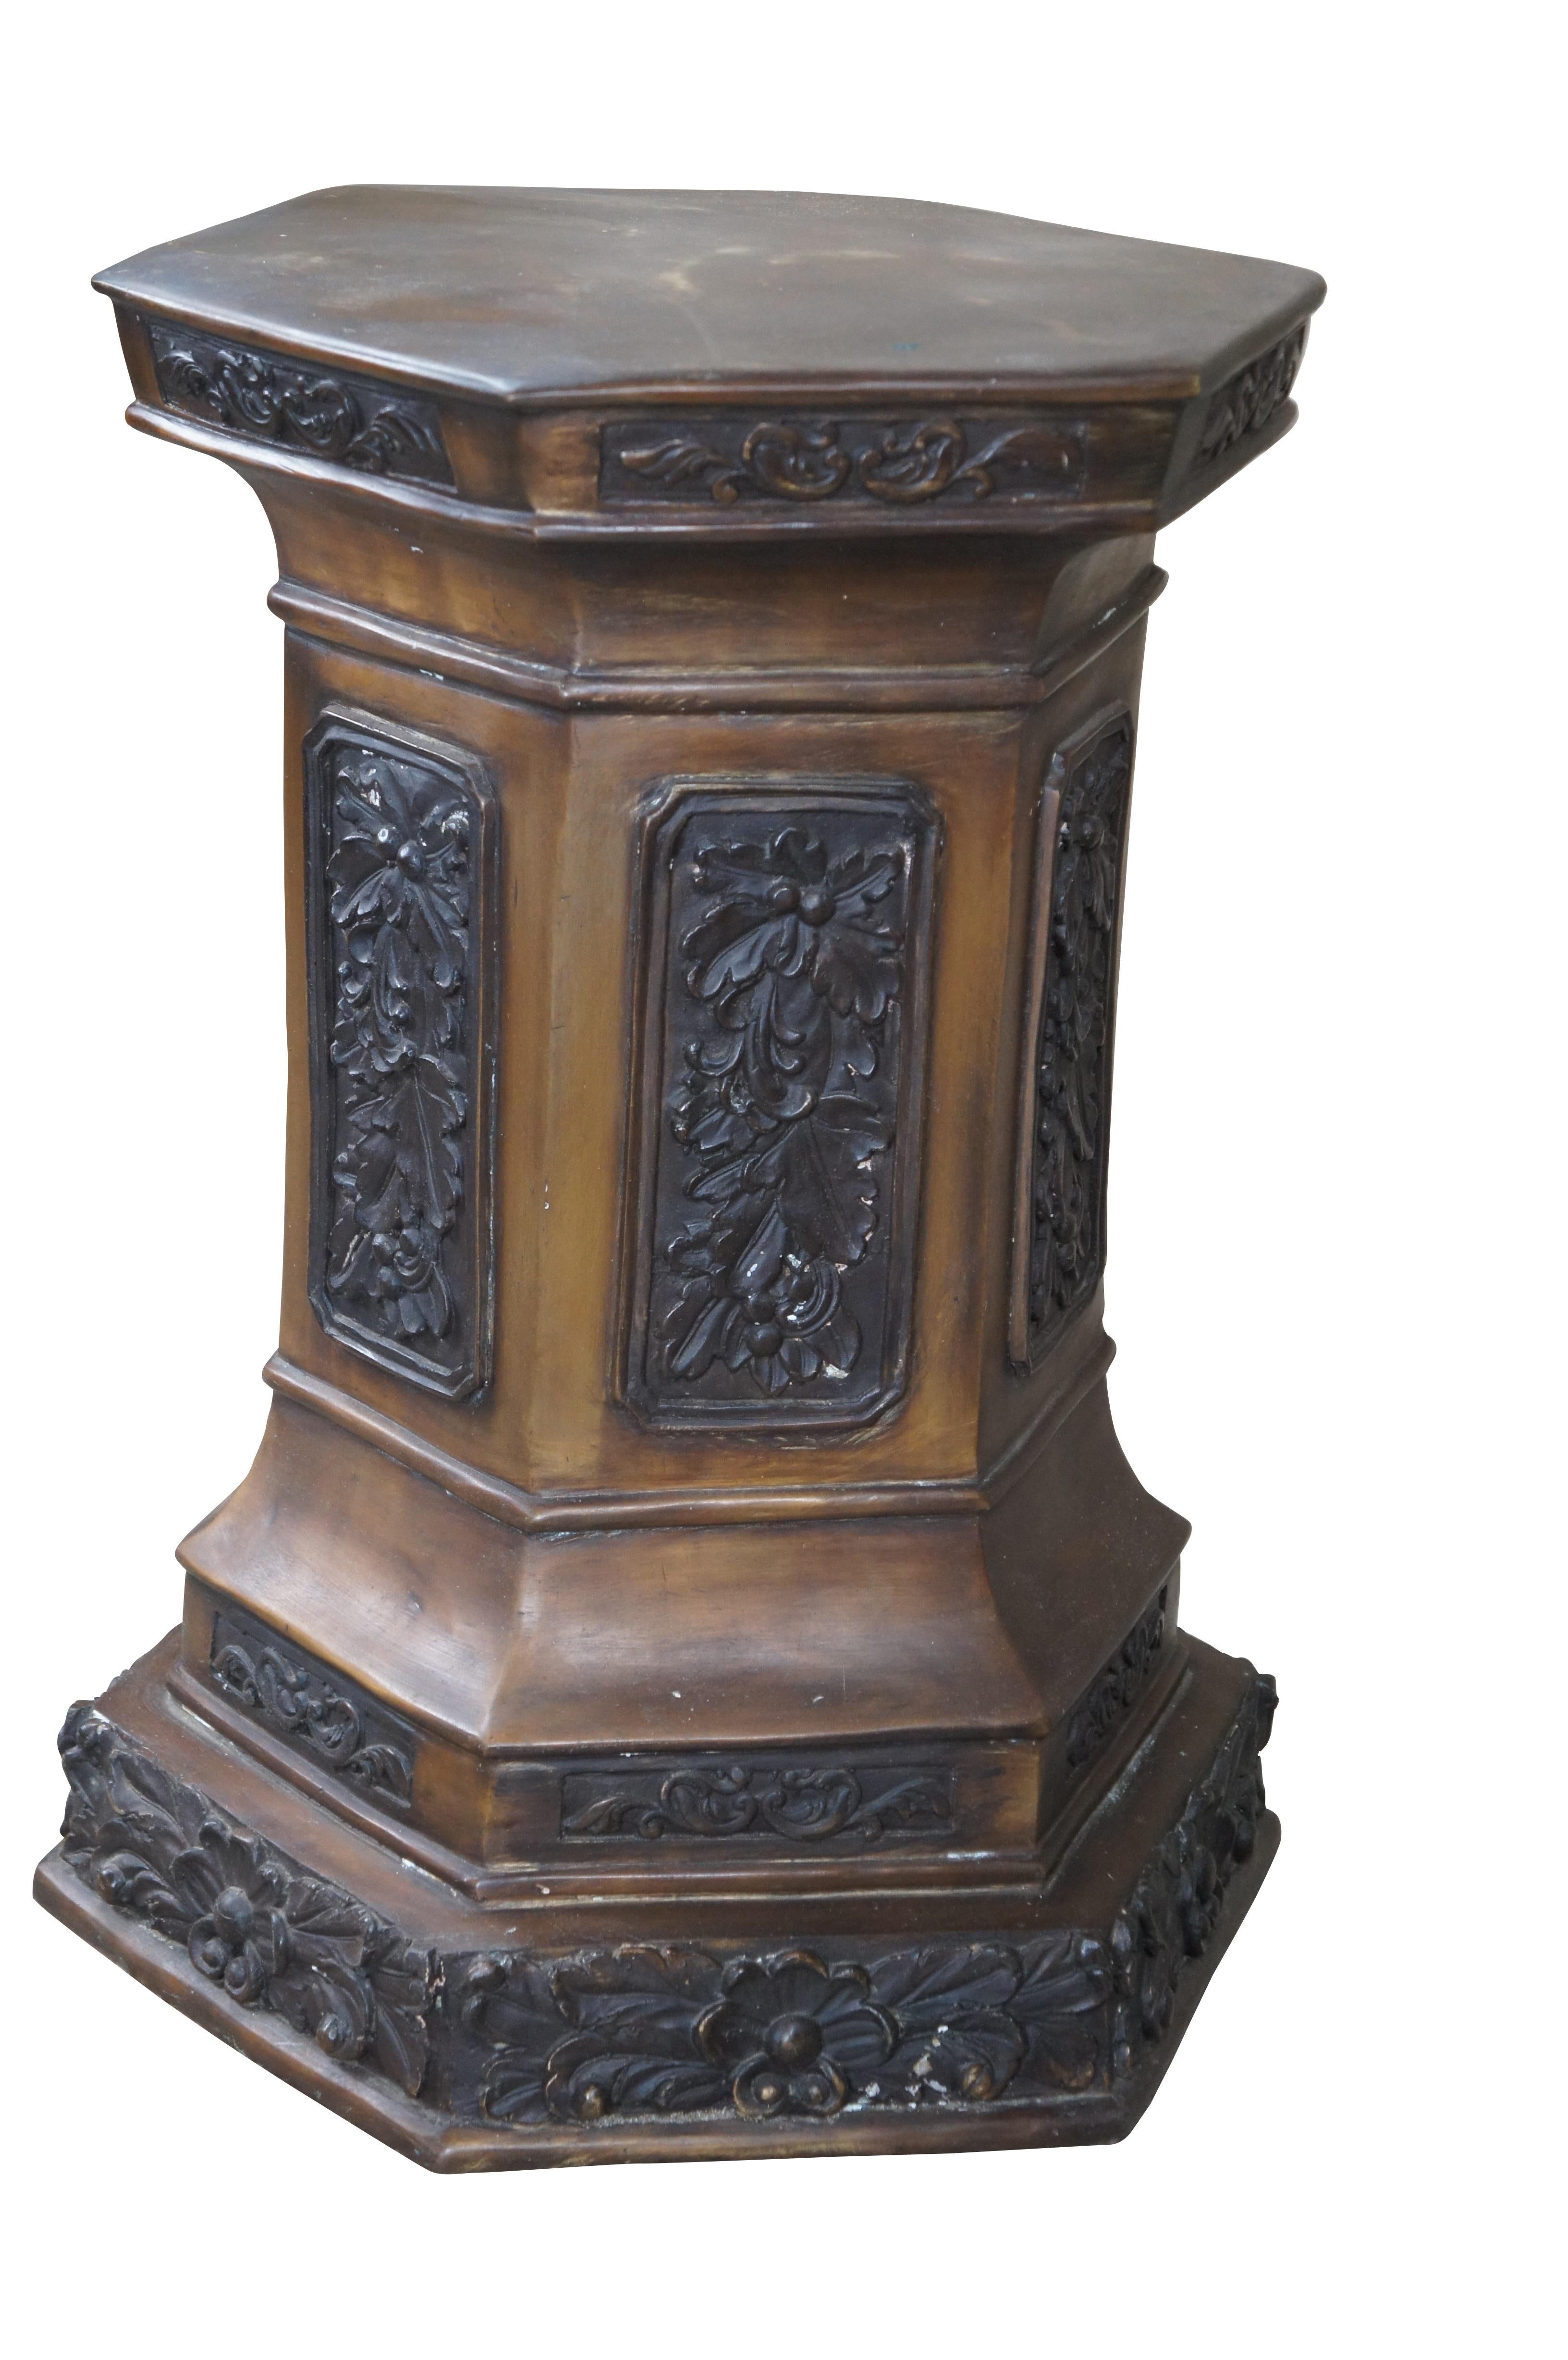 Renaissance-Revival-Sockel des späten 20. Jahrhunderts, Skulptur oder Pflanzenständer. Sechseckige Form aus Bronze mit Flachreliefblättern.

Abmessungen:
15